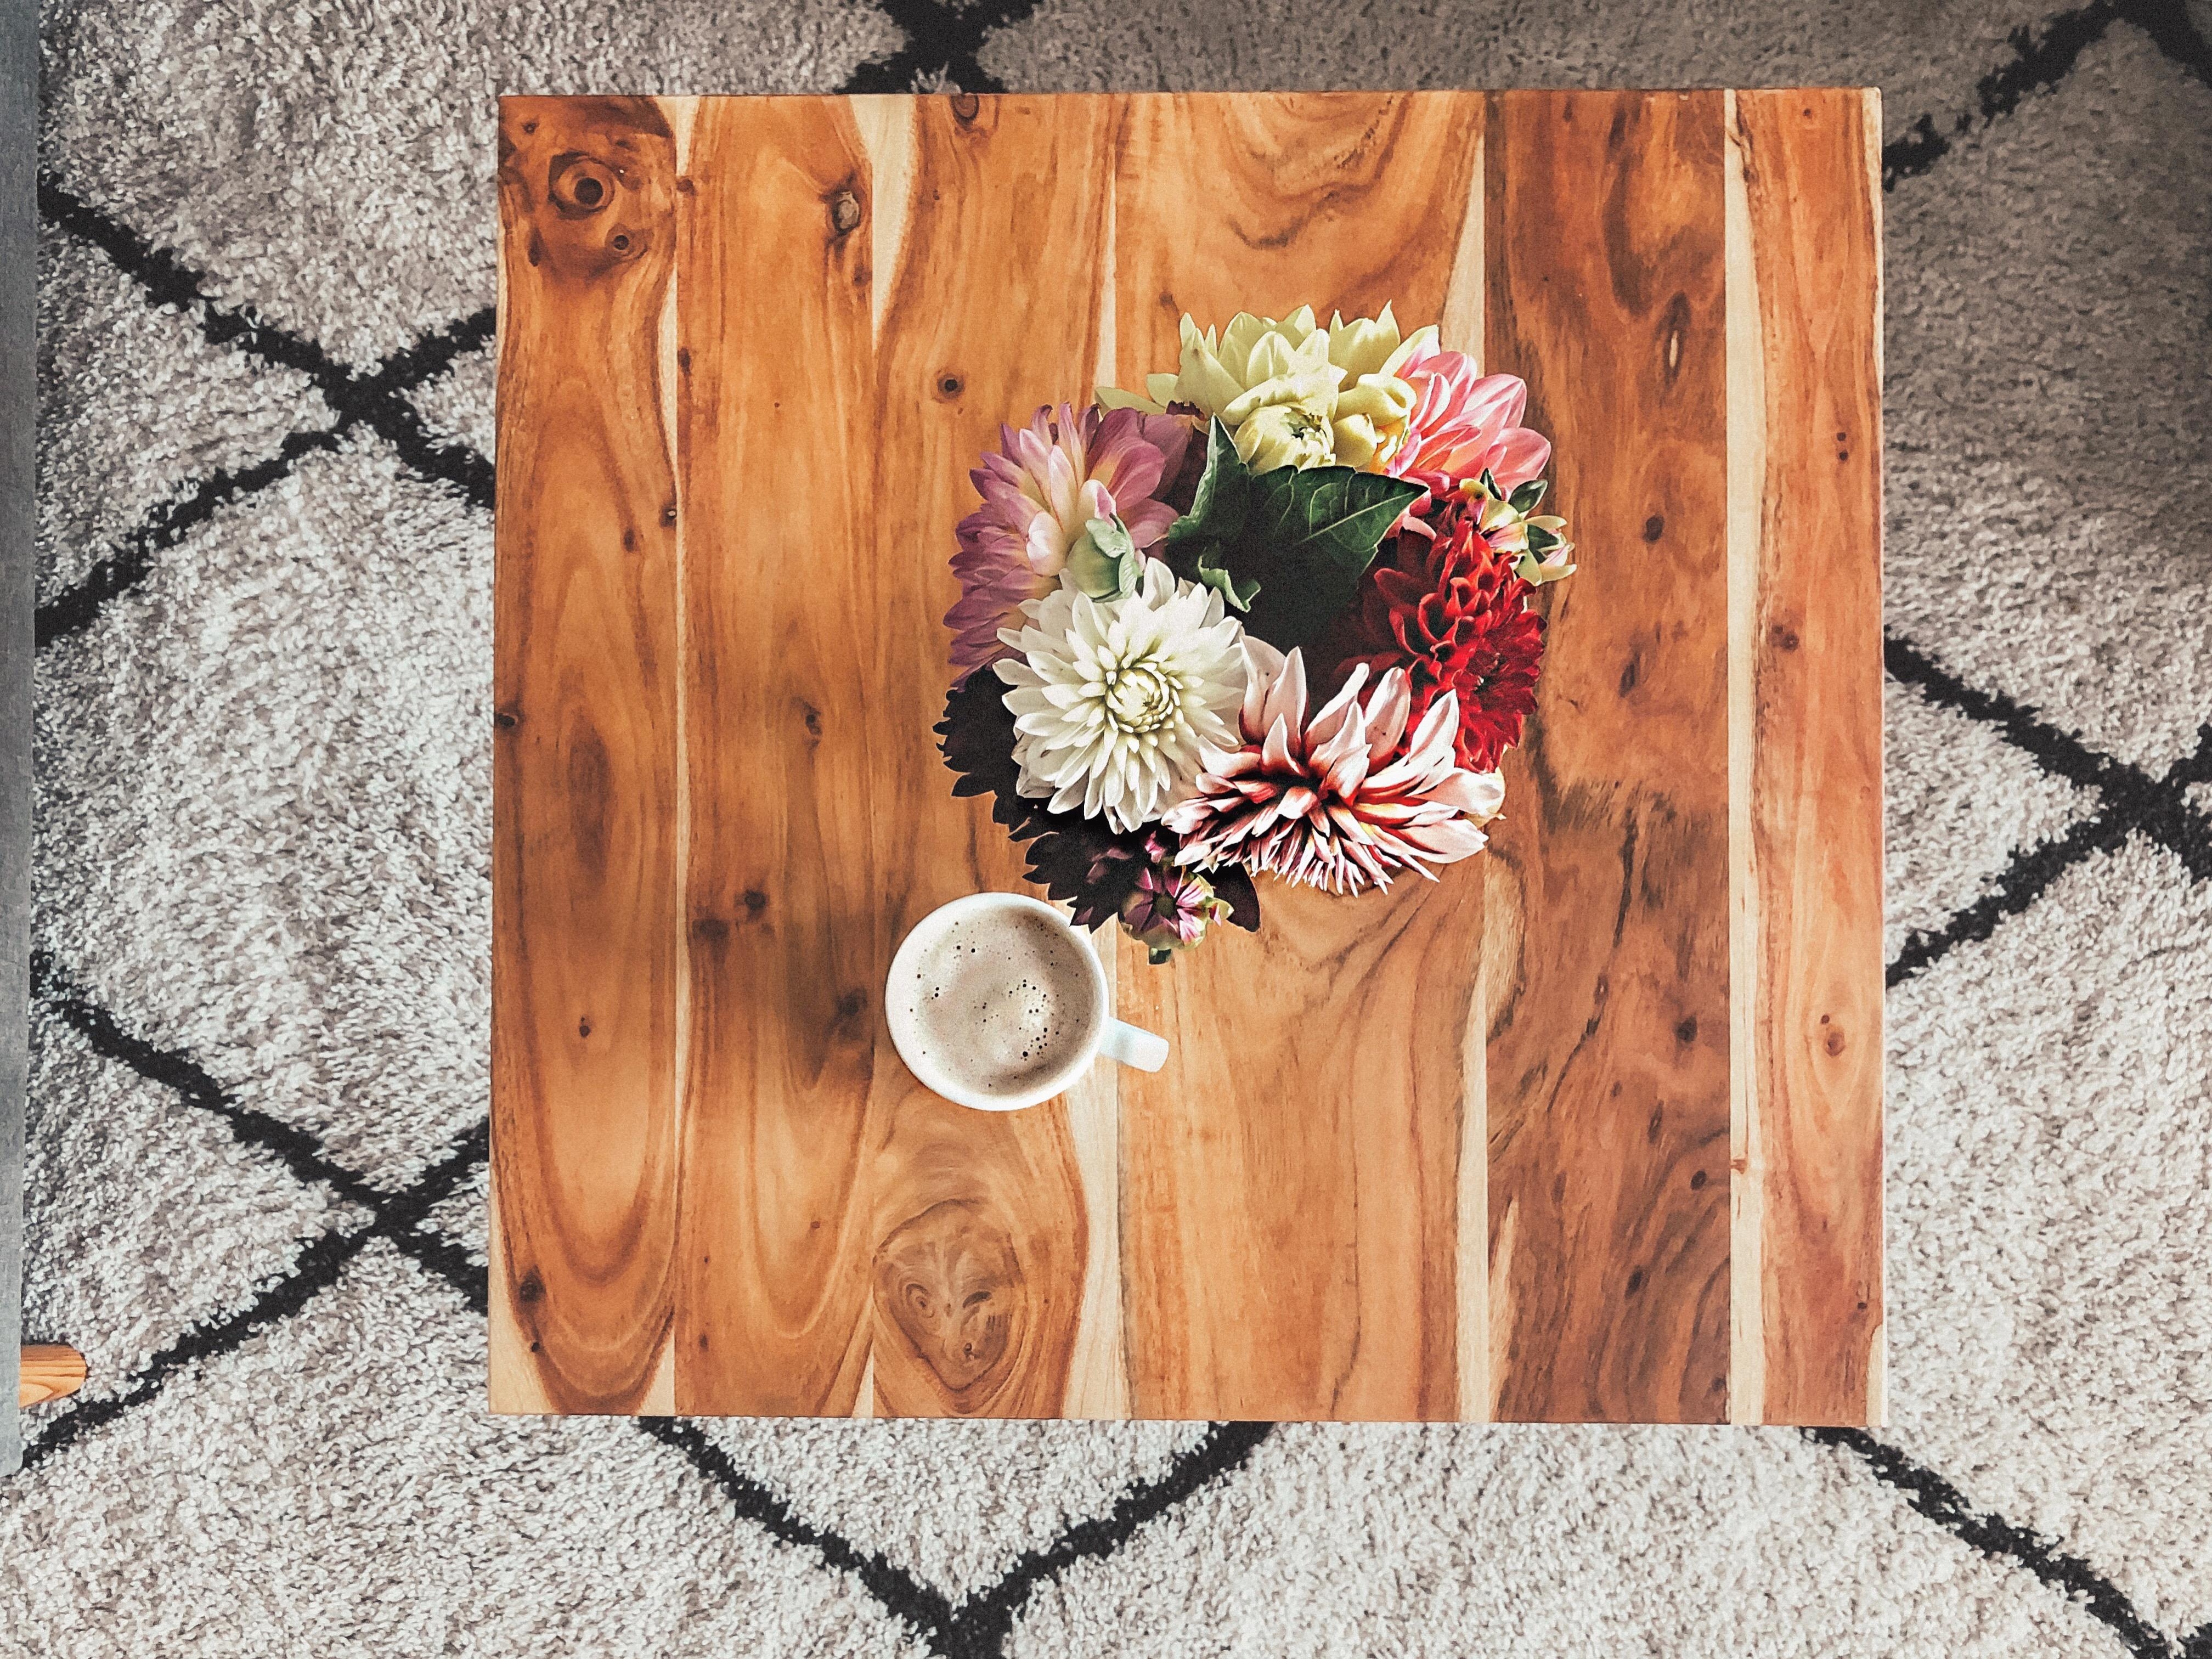 Es ist wieder Zeit für den #tableontuesday 😊 #table #coffeelover #freshflowers #flowers #livingroom #interior #holz 